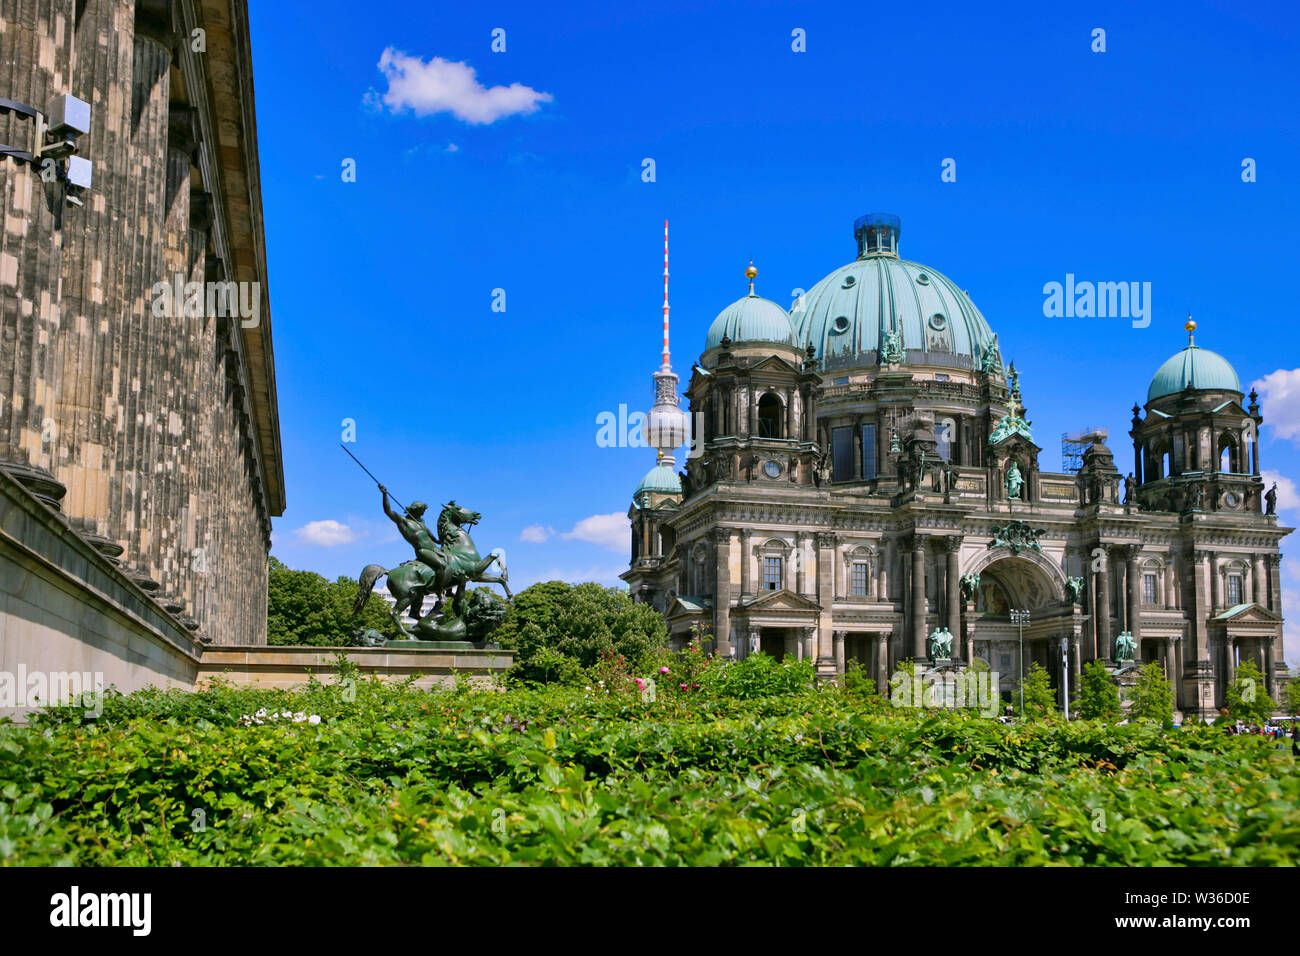 Kaempfende Amazone, lutter contre Amazon, sculpture en bronze sur les marches de l'Altes Museum, ancien musée en face de la cathédrale de Berlin, Berlin, Allemagne, Euro Banque D'Images